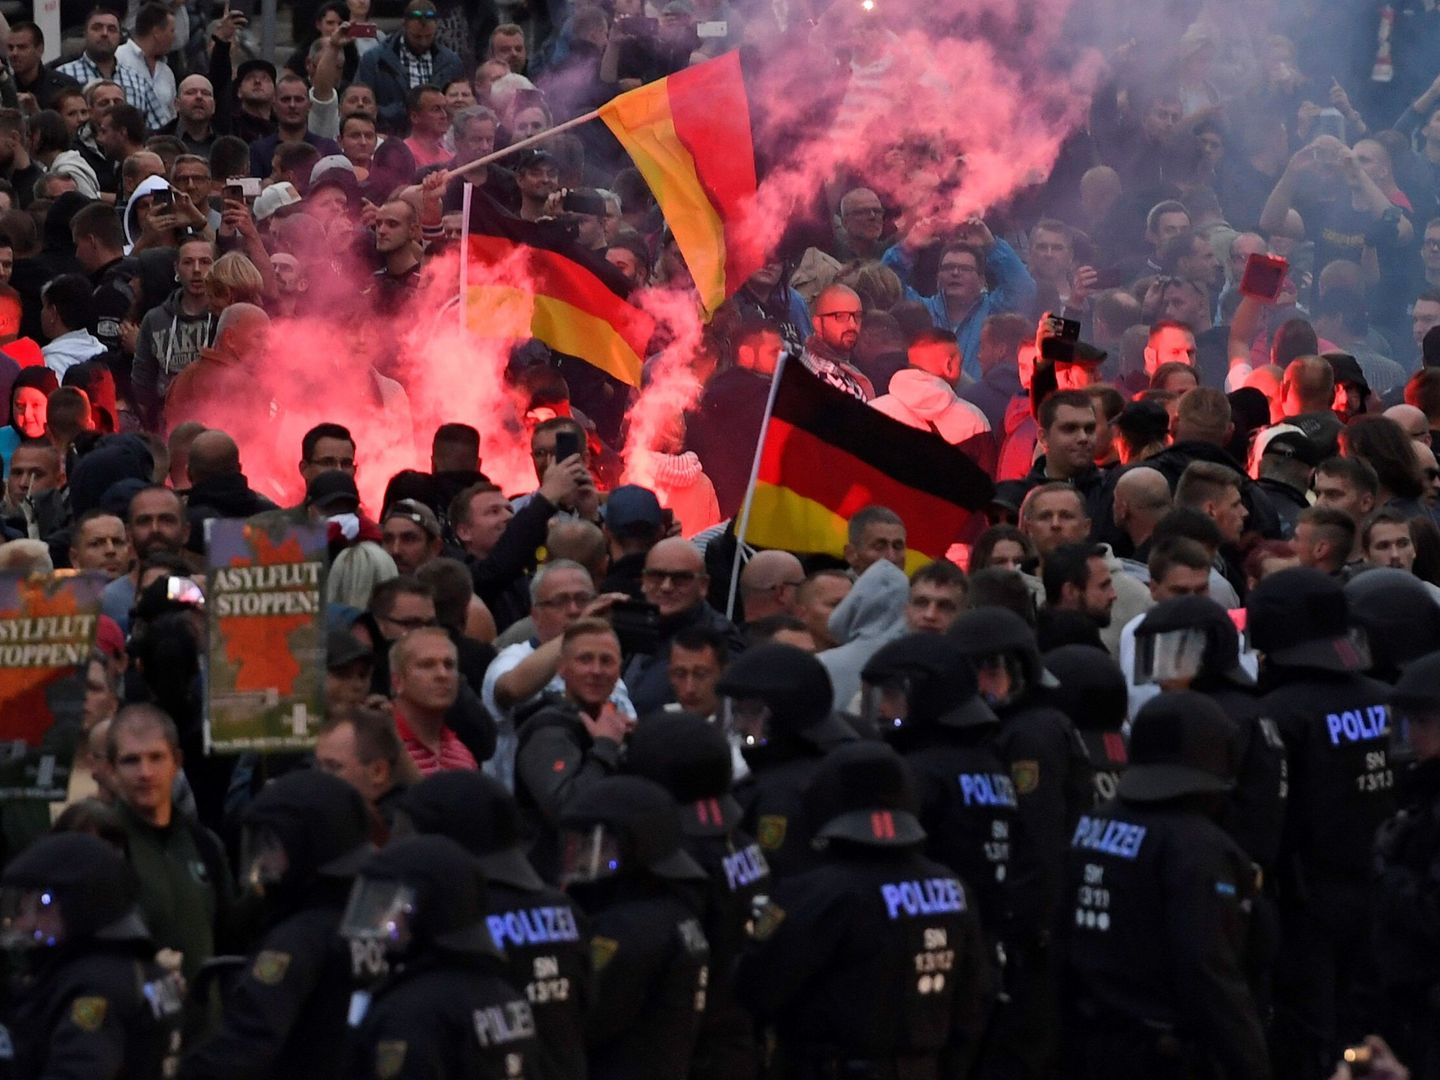 Los disturbos en Chemnitz derivaron en 'cacerías' de inmigrantes que horrorizaron a Alemania (EFE)